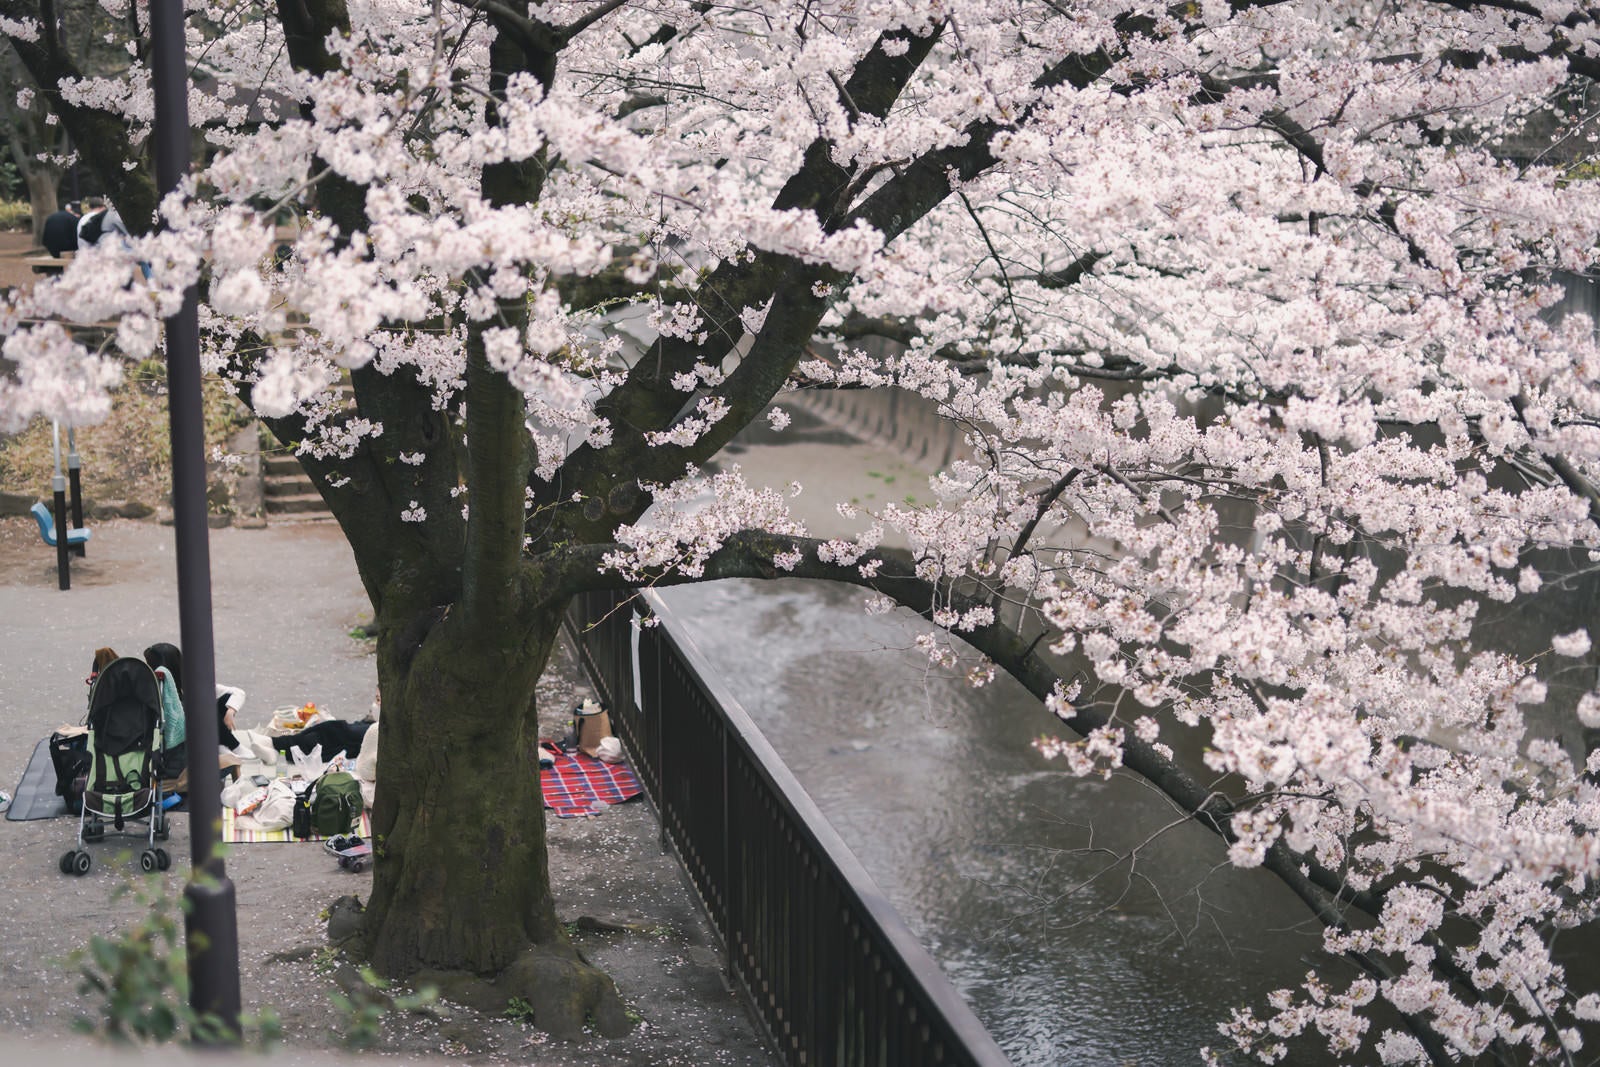 「満開の桜の木と花見」の写真